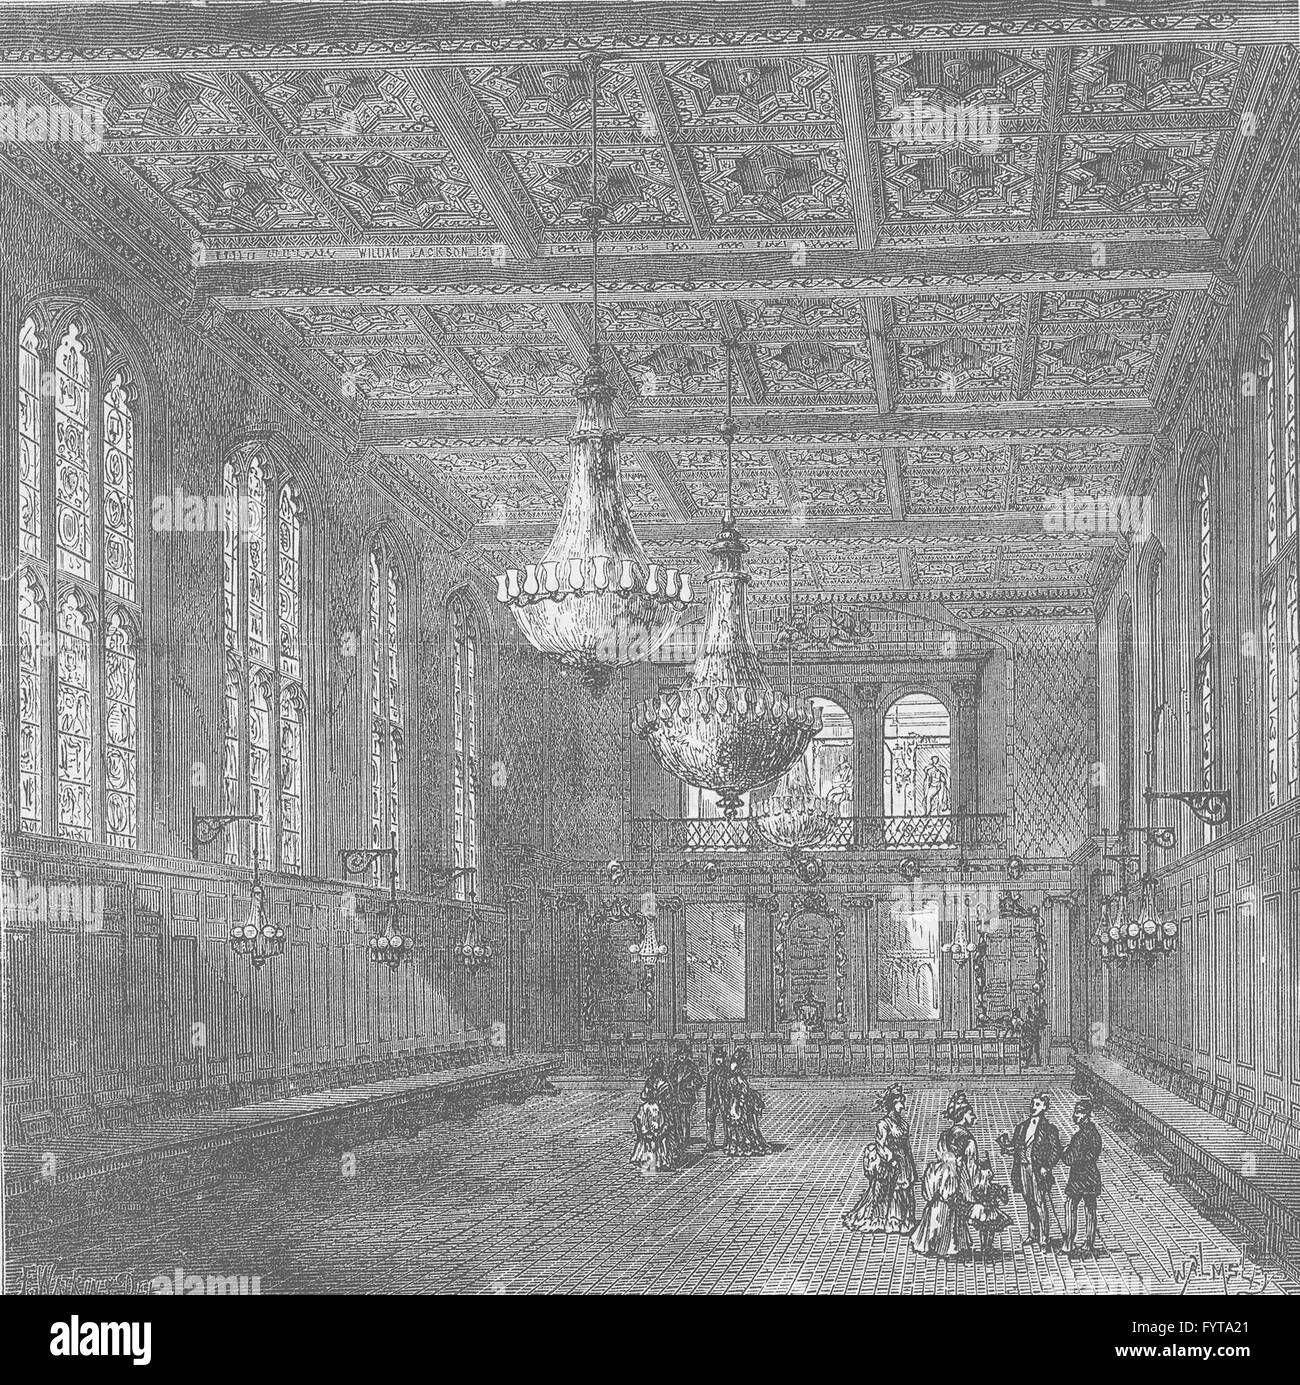 Ville de Londres : Intérieur de Merchant Taylors' Hall, antique print c1880 Banque D'Images